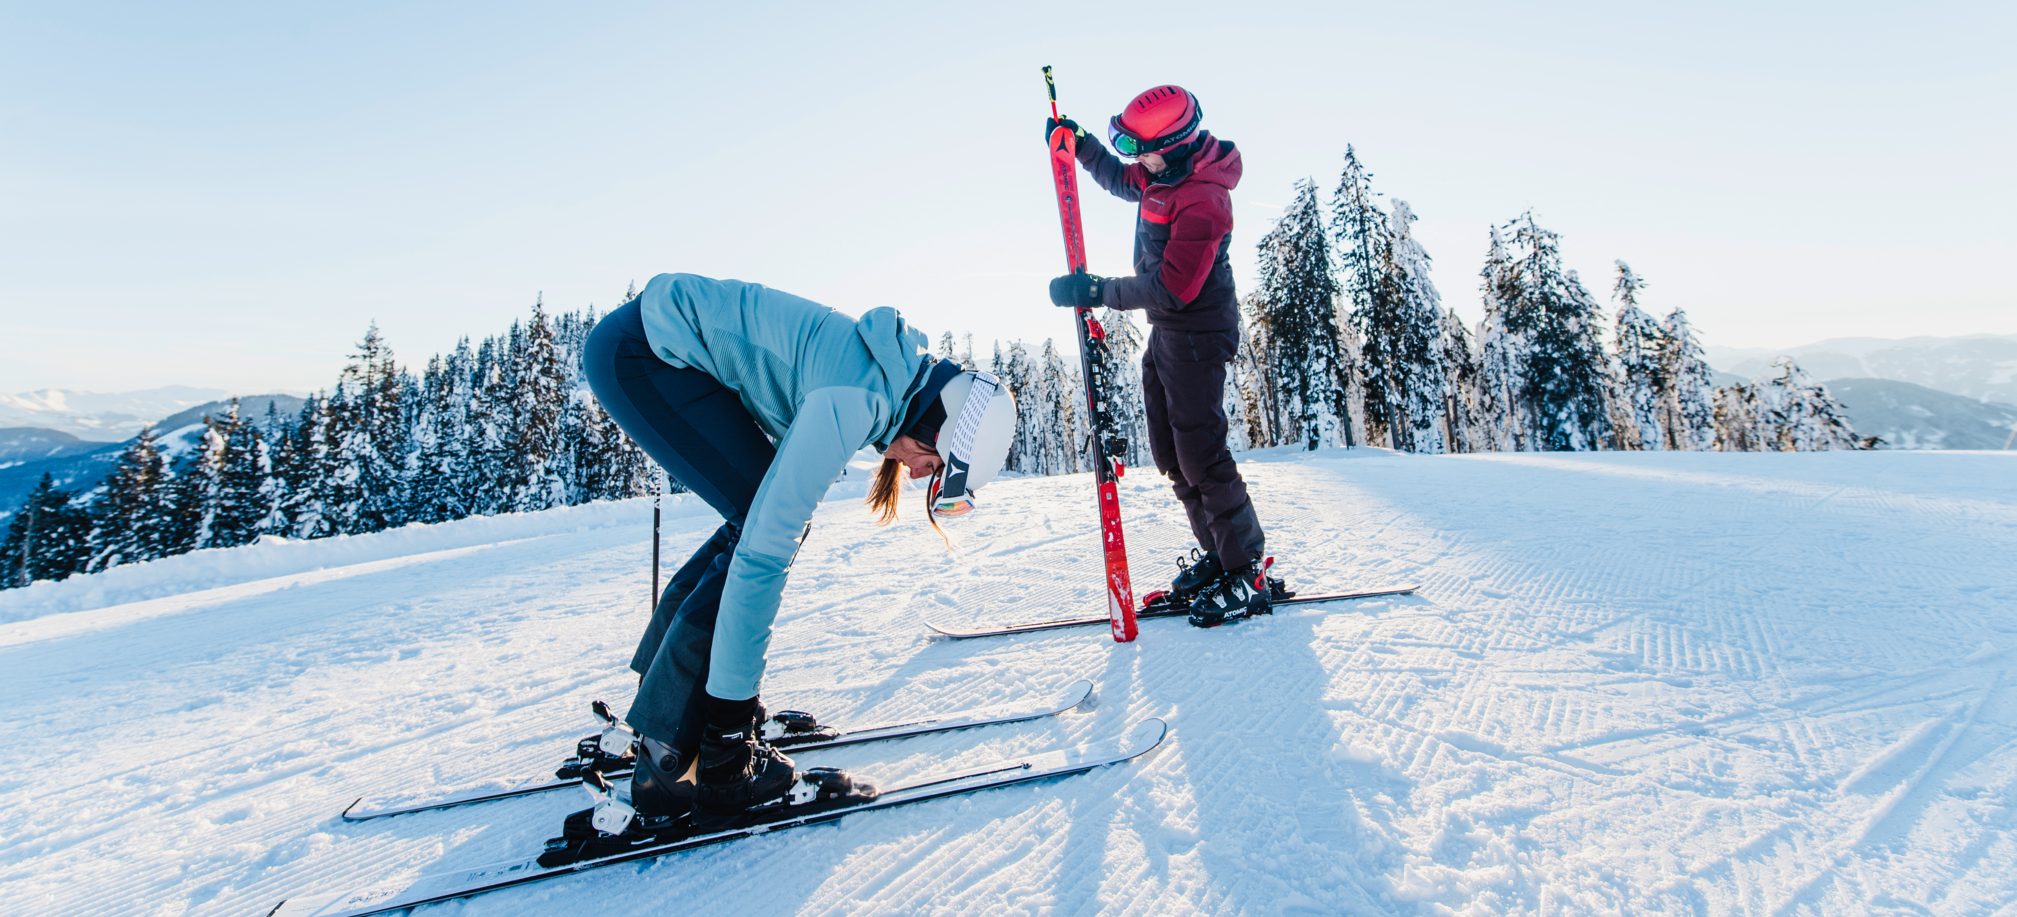 Eine Skifahrerin beugt sich zu ihren Schnellen bei den Skischuhen hinunter und der Skifahrer schaut sich gerade den abgeschnallten Ski an während er mit dem anderen noch auf der Piste steht